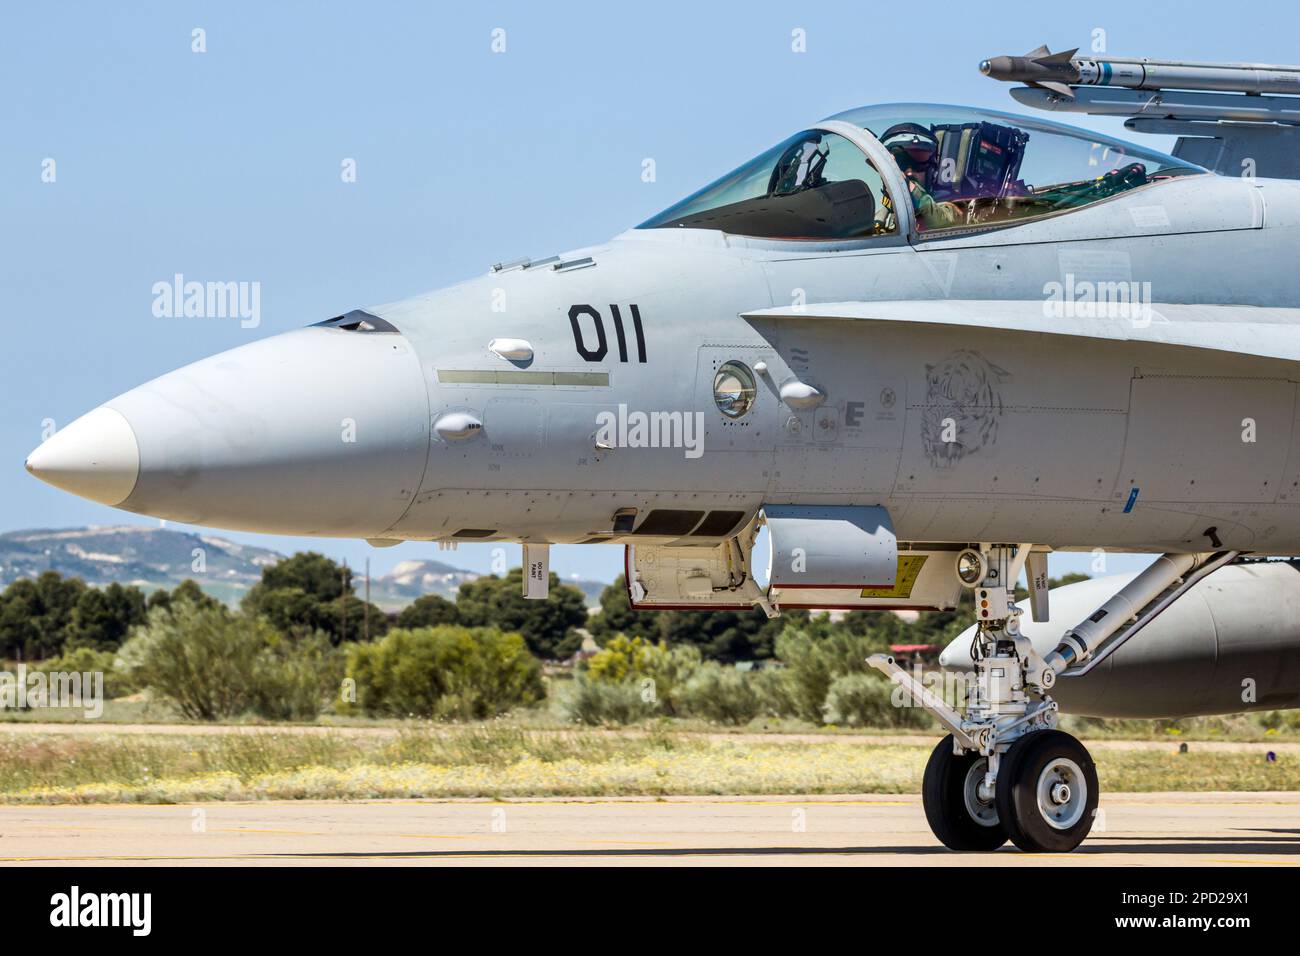 Forze aeree svizzere F-18 Hornet fighter jet taxiing dopo l'atterraggio sulla base aerea di Saragozza. Saragozza, Spagna - 20 maggio 2016 Foto Stock